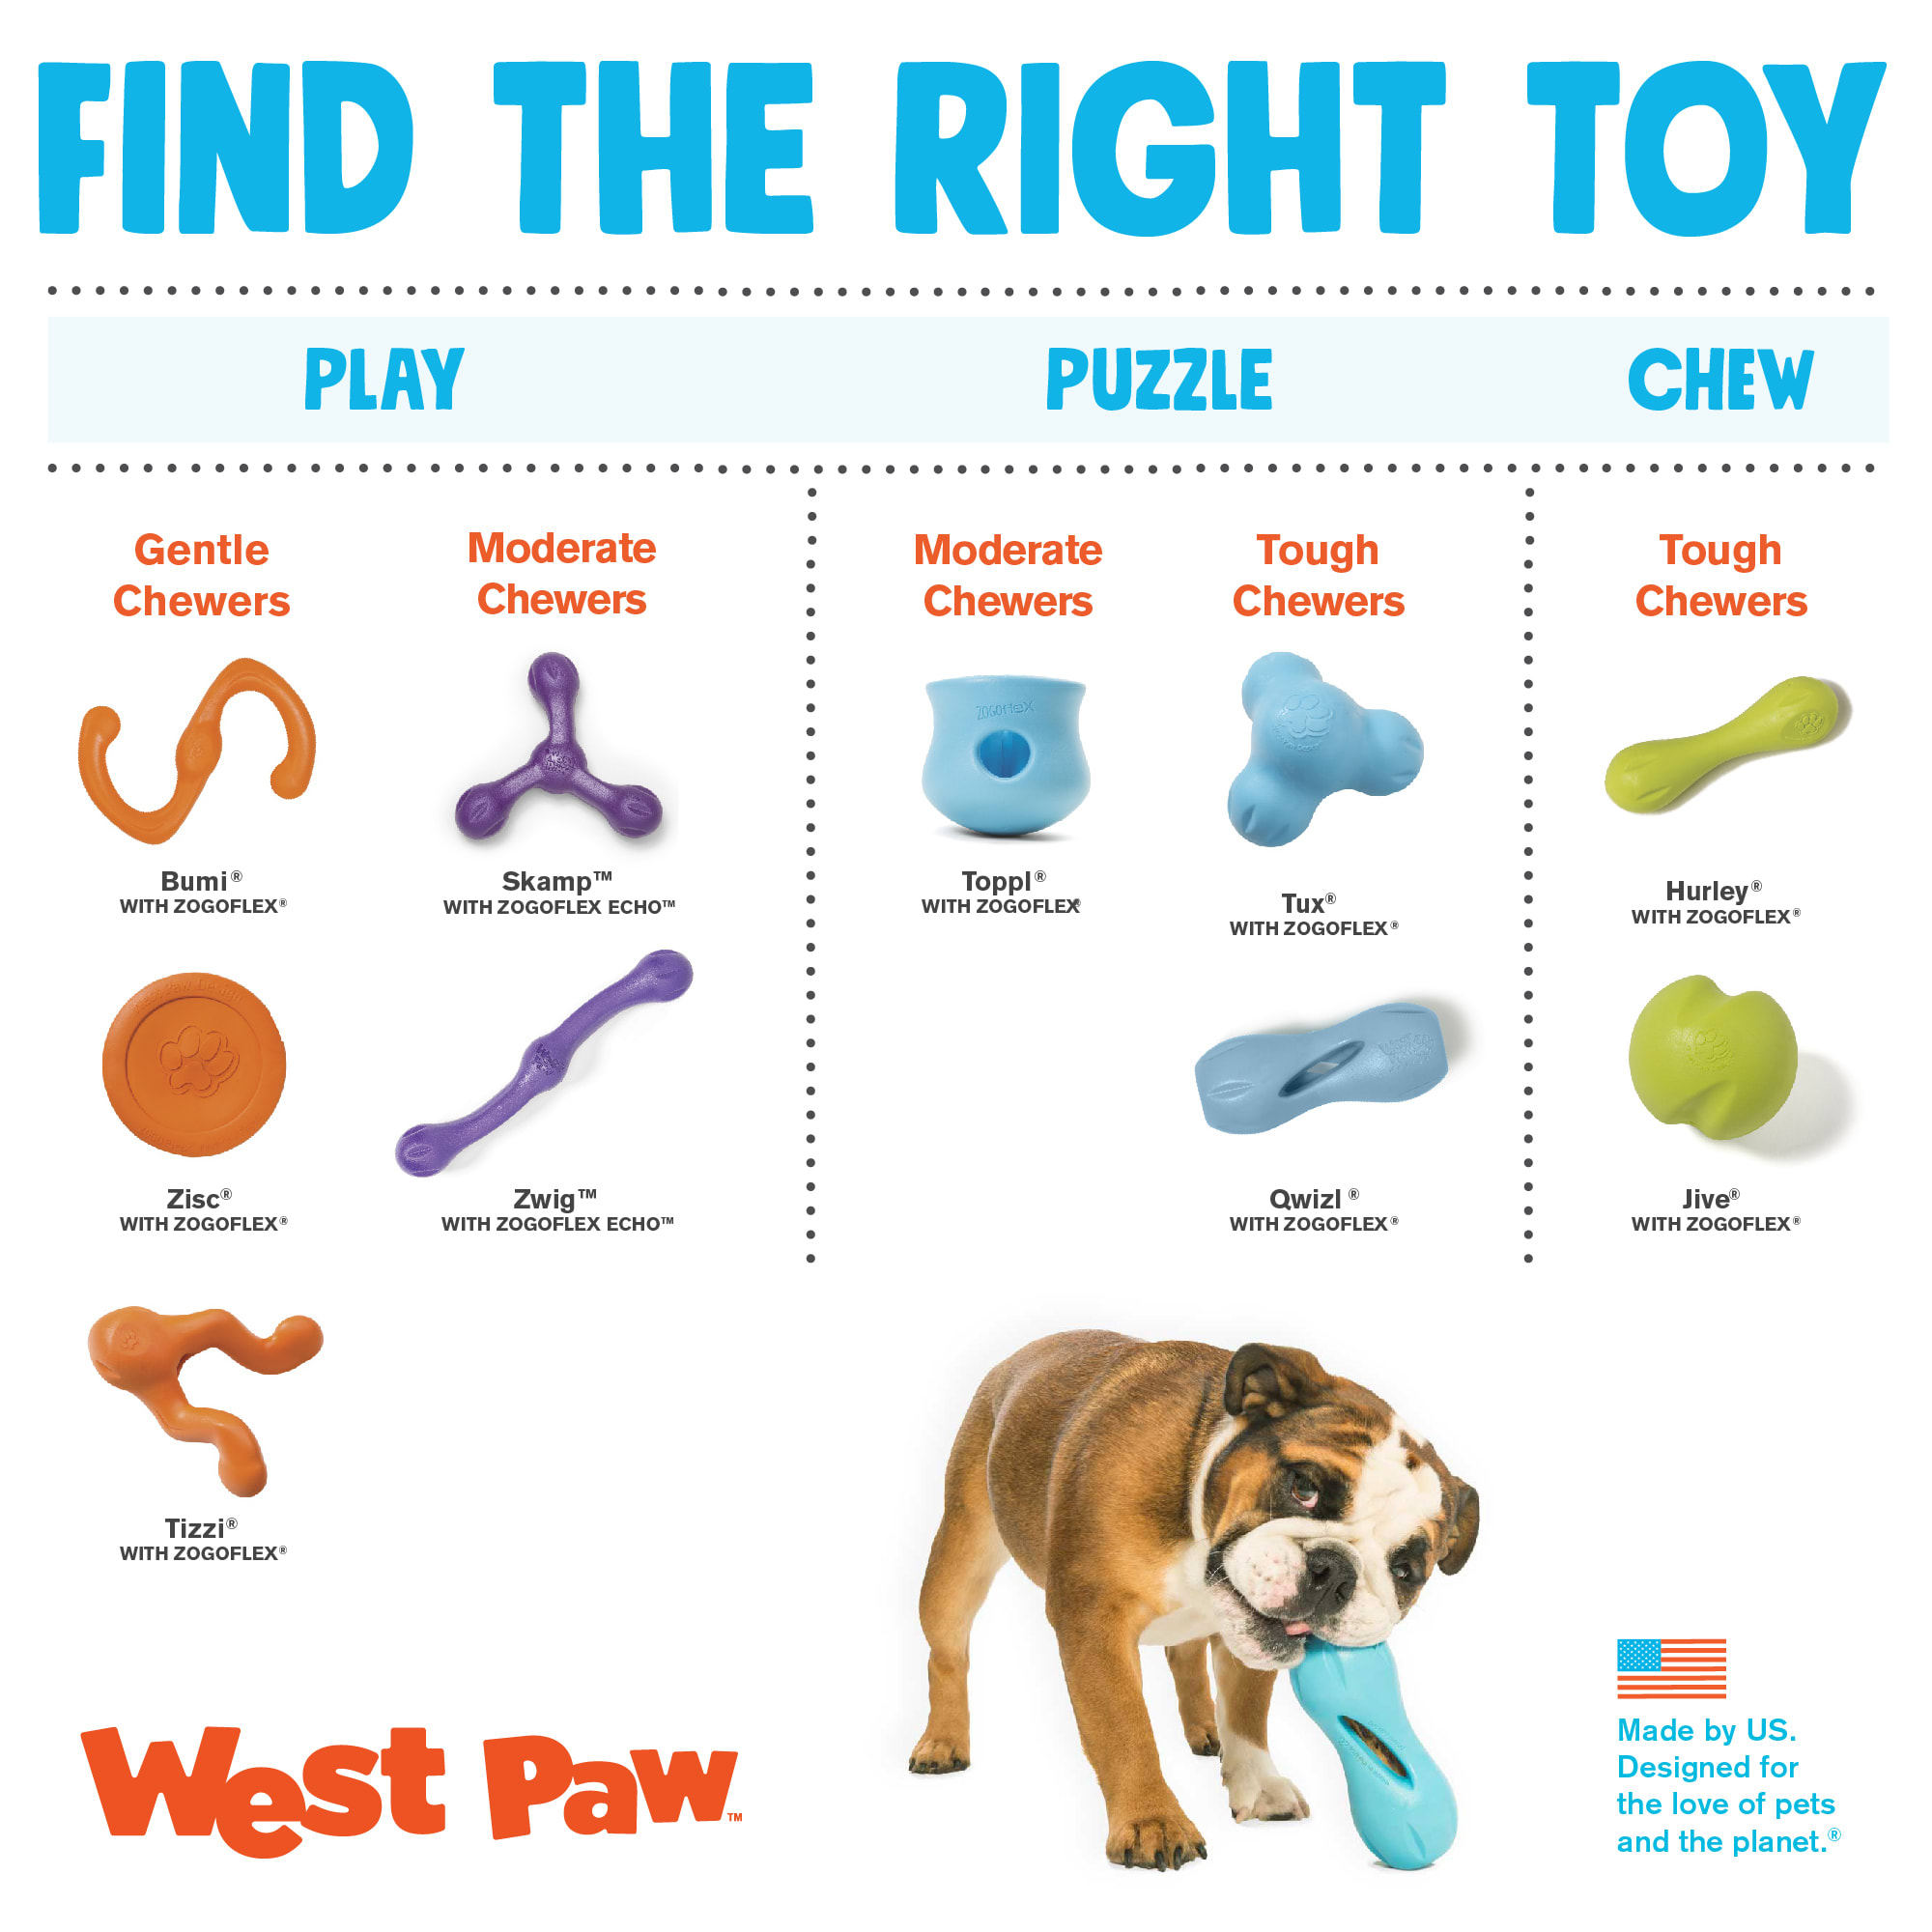 West Paw Small Qwizl Dog Toy